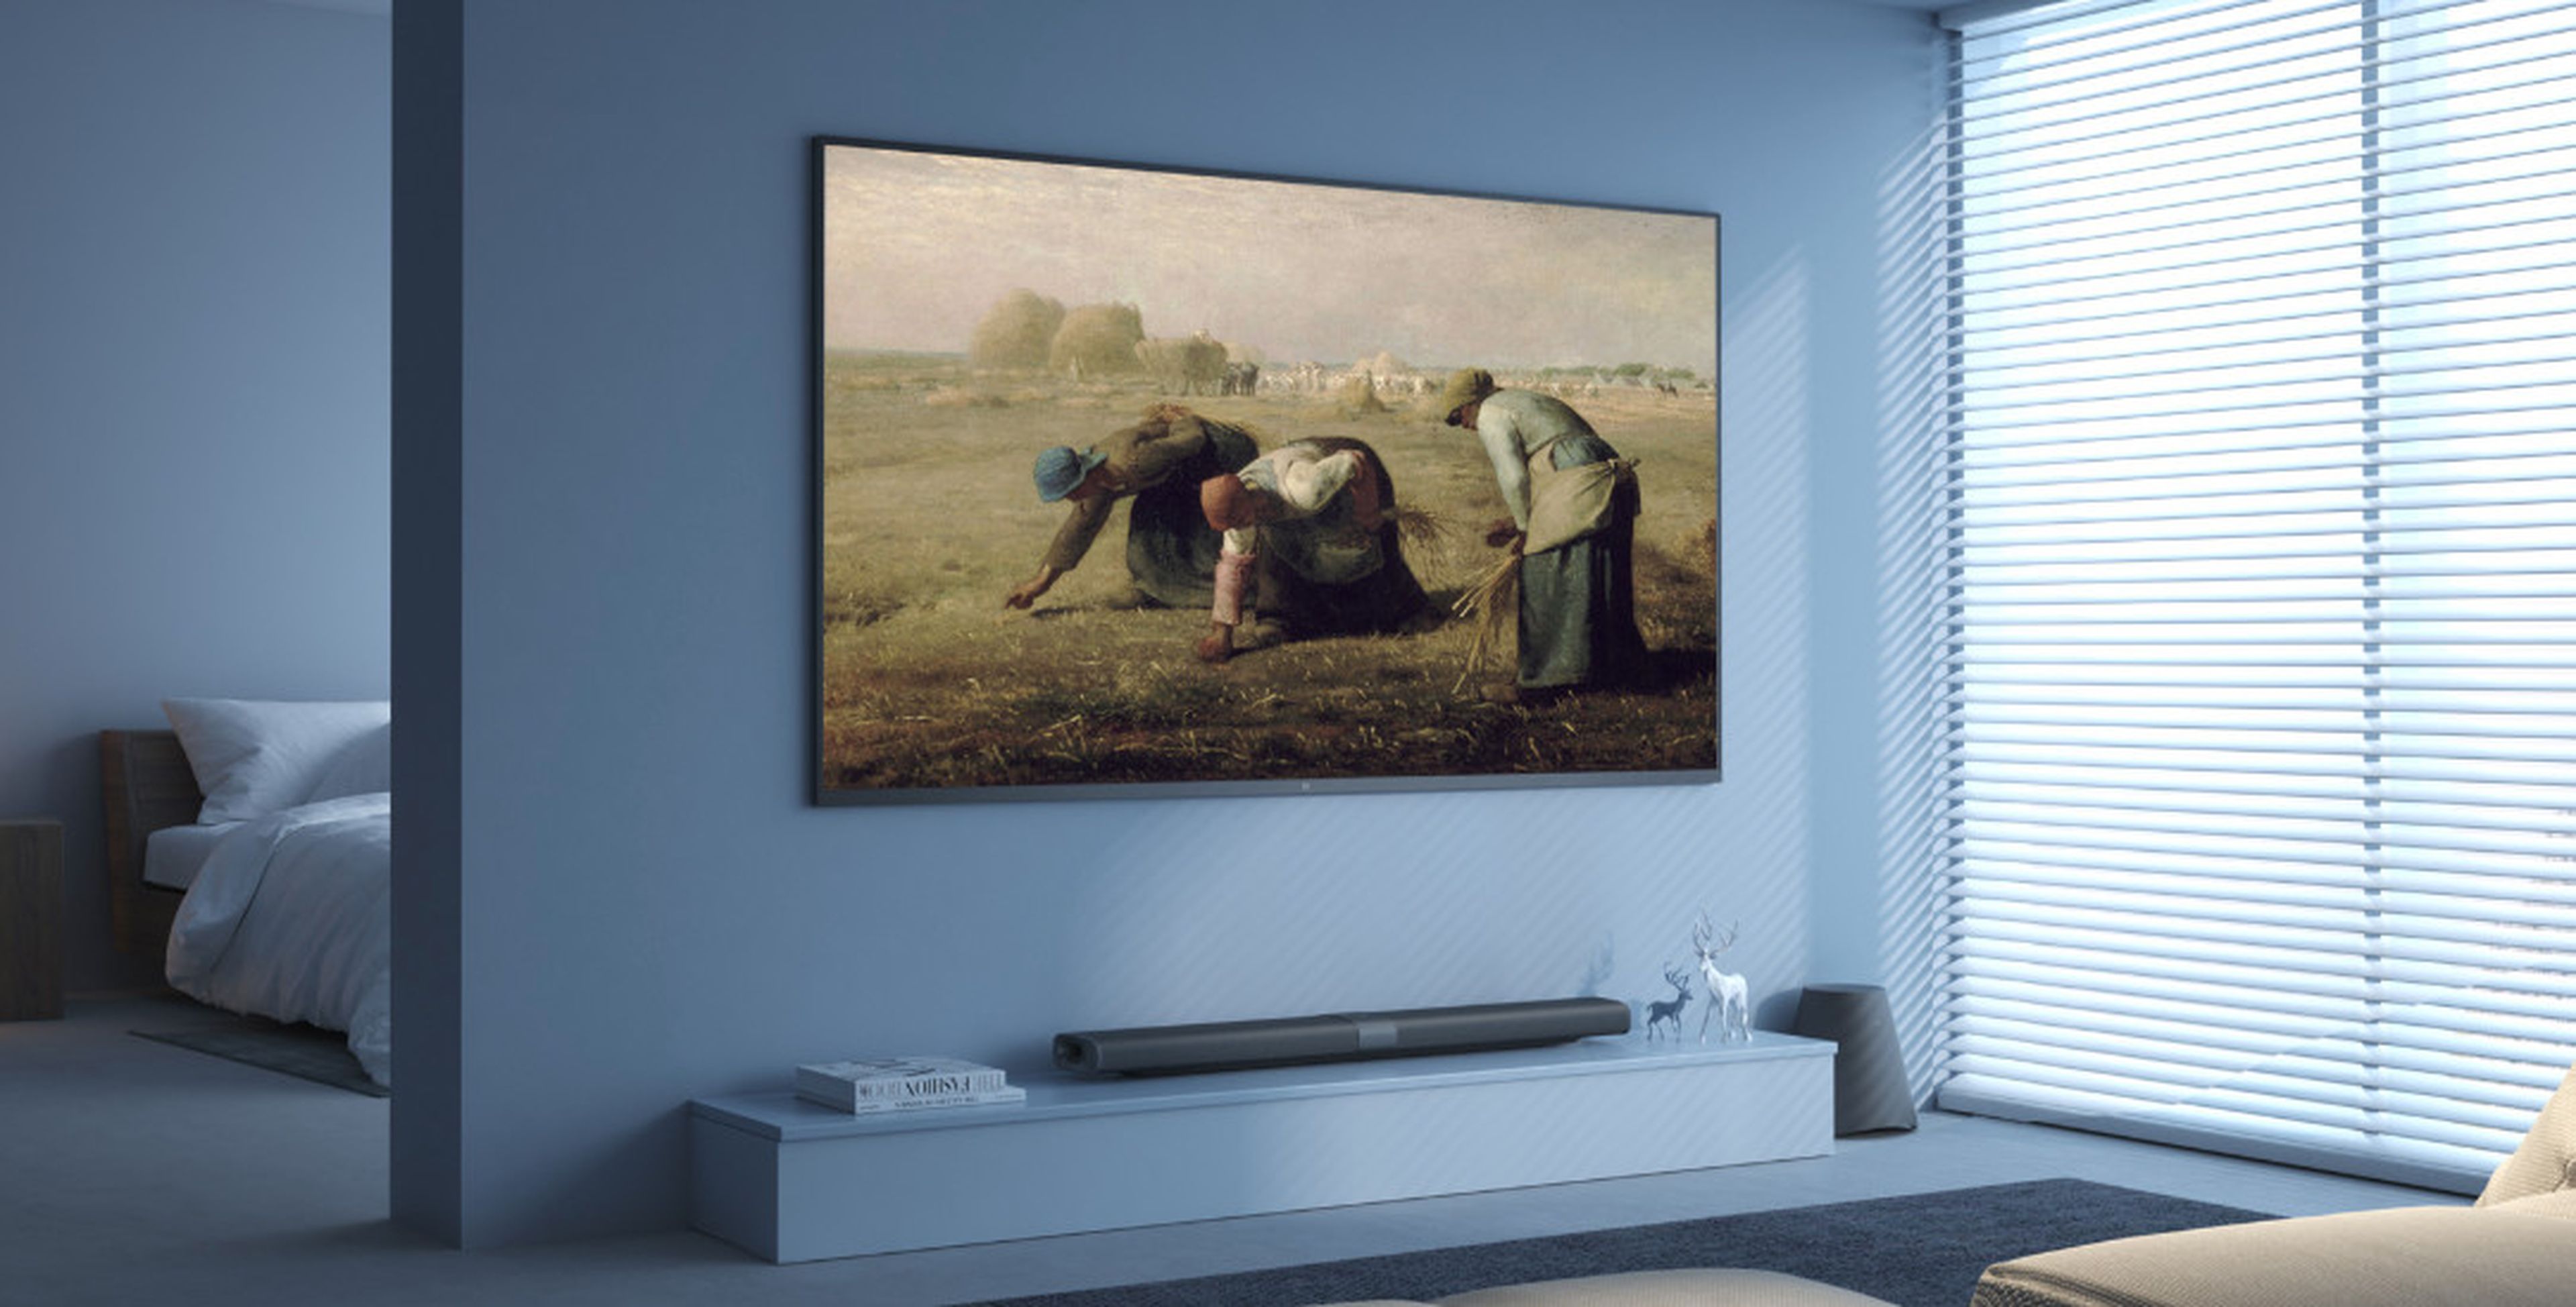 Smart TV Xiaomi Mi Mural TV 4K: Características, diseño y precio